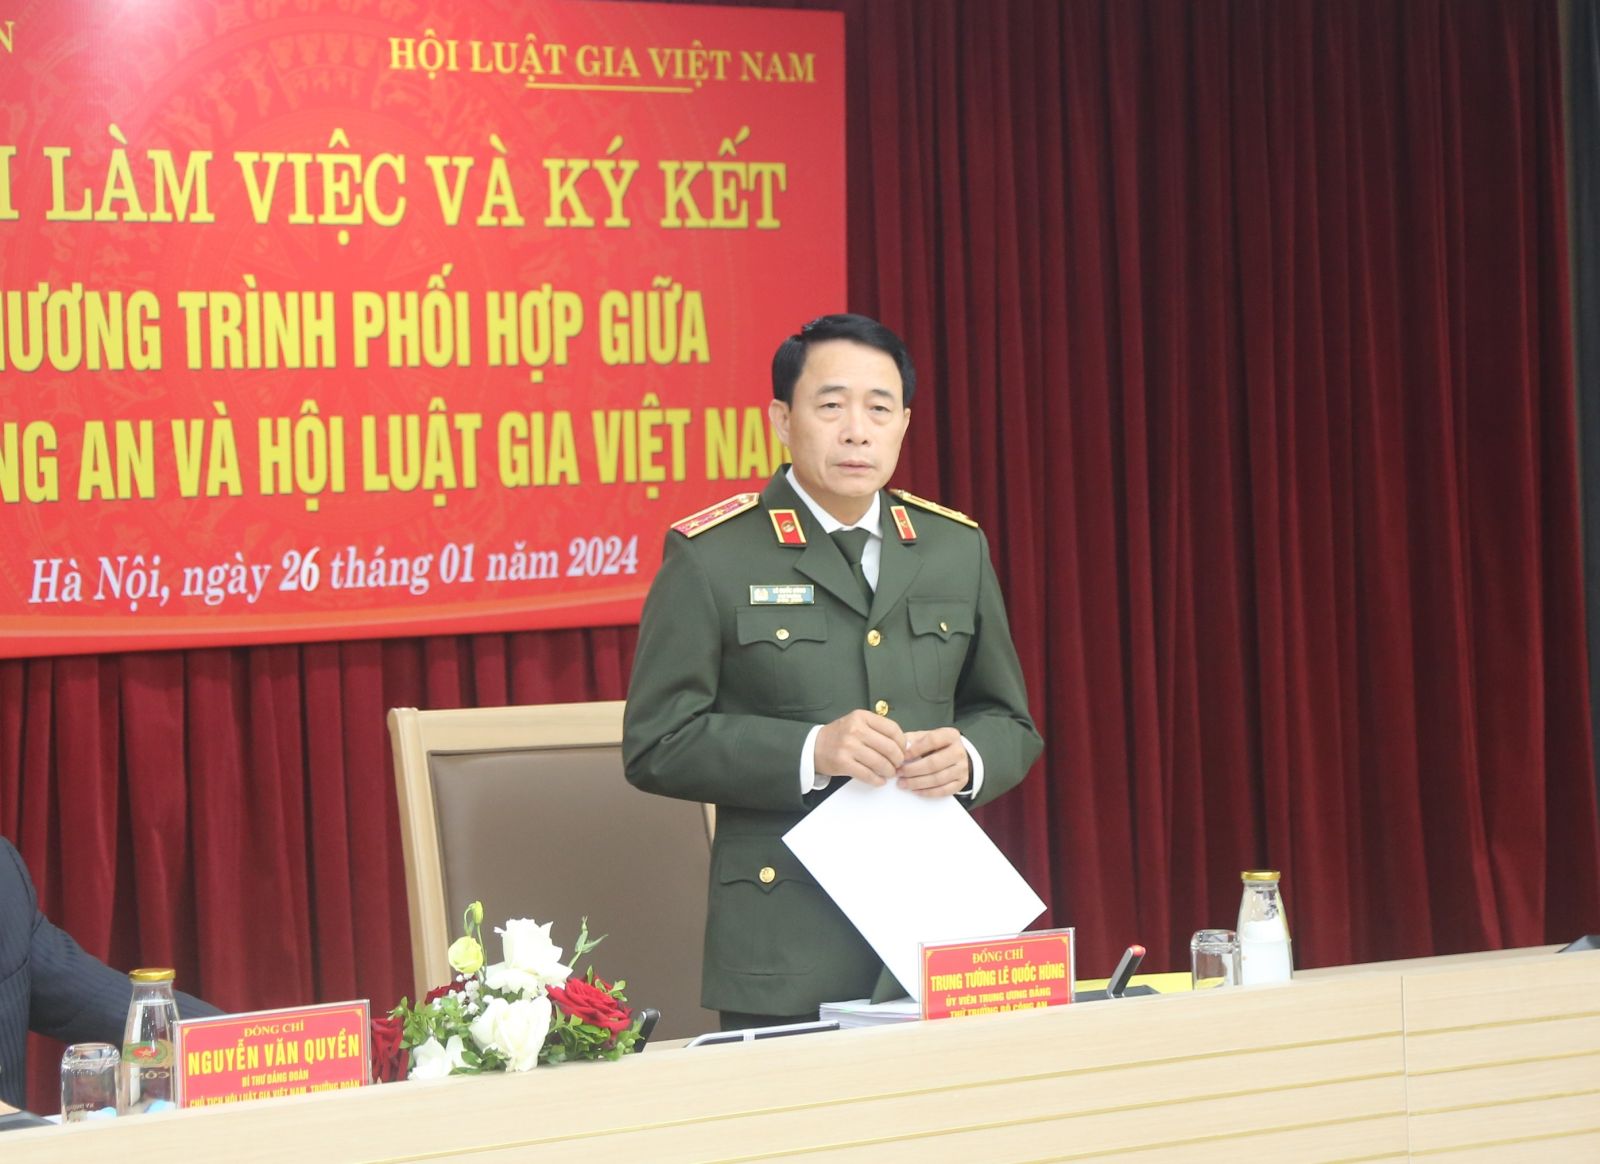 Hội Luật gia Việt Nam và Bộ Công an ký kết chương trình phối hợp